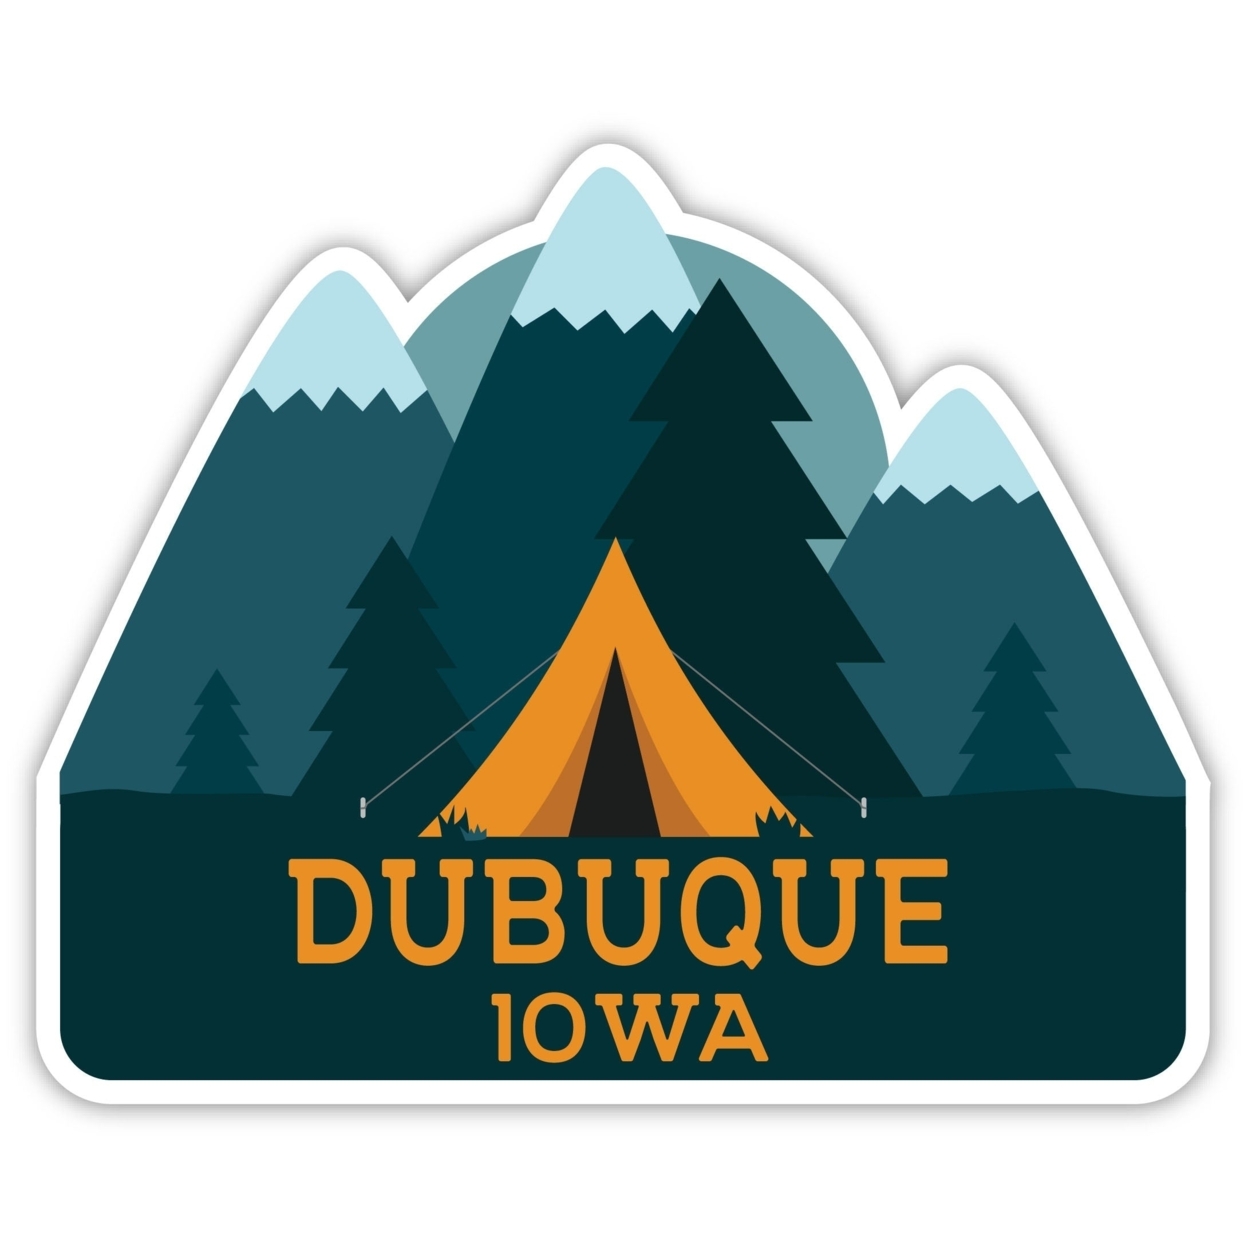 Dubuque Iowa Souvenir Decorative Stickers (Choose Theme And Size) - Single Unit, 10-Inch, Tent